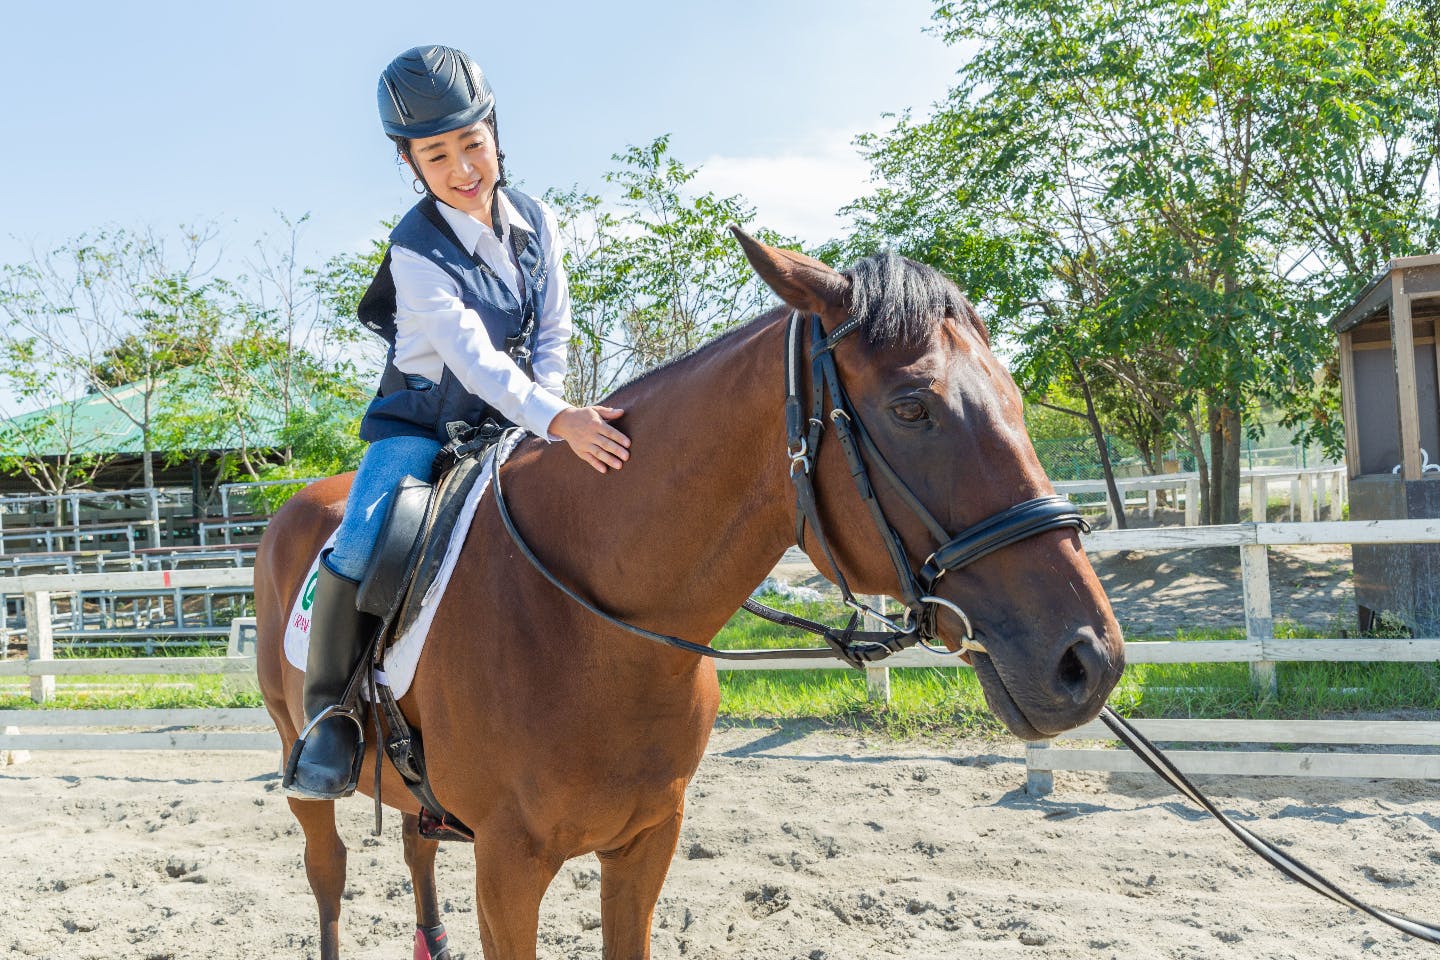 【埼玉・南埼玉・乗馬】馬と触れ合い癒される。東武動物公園隣接の乗馬クラブで行う乗馬体験